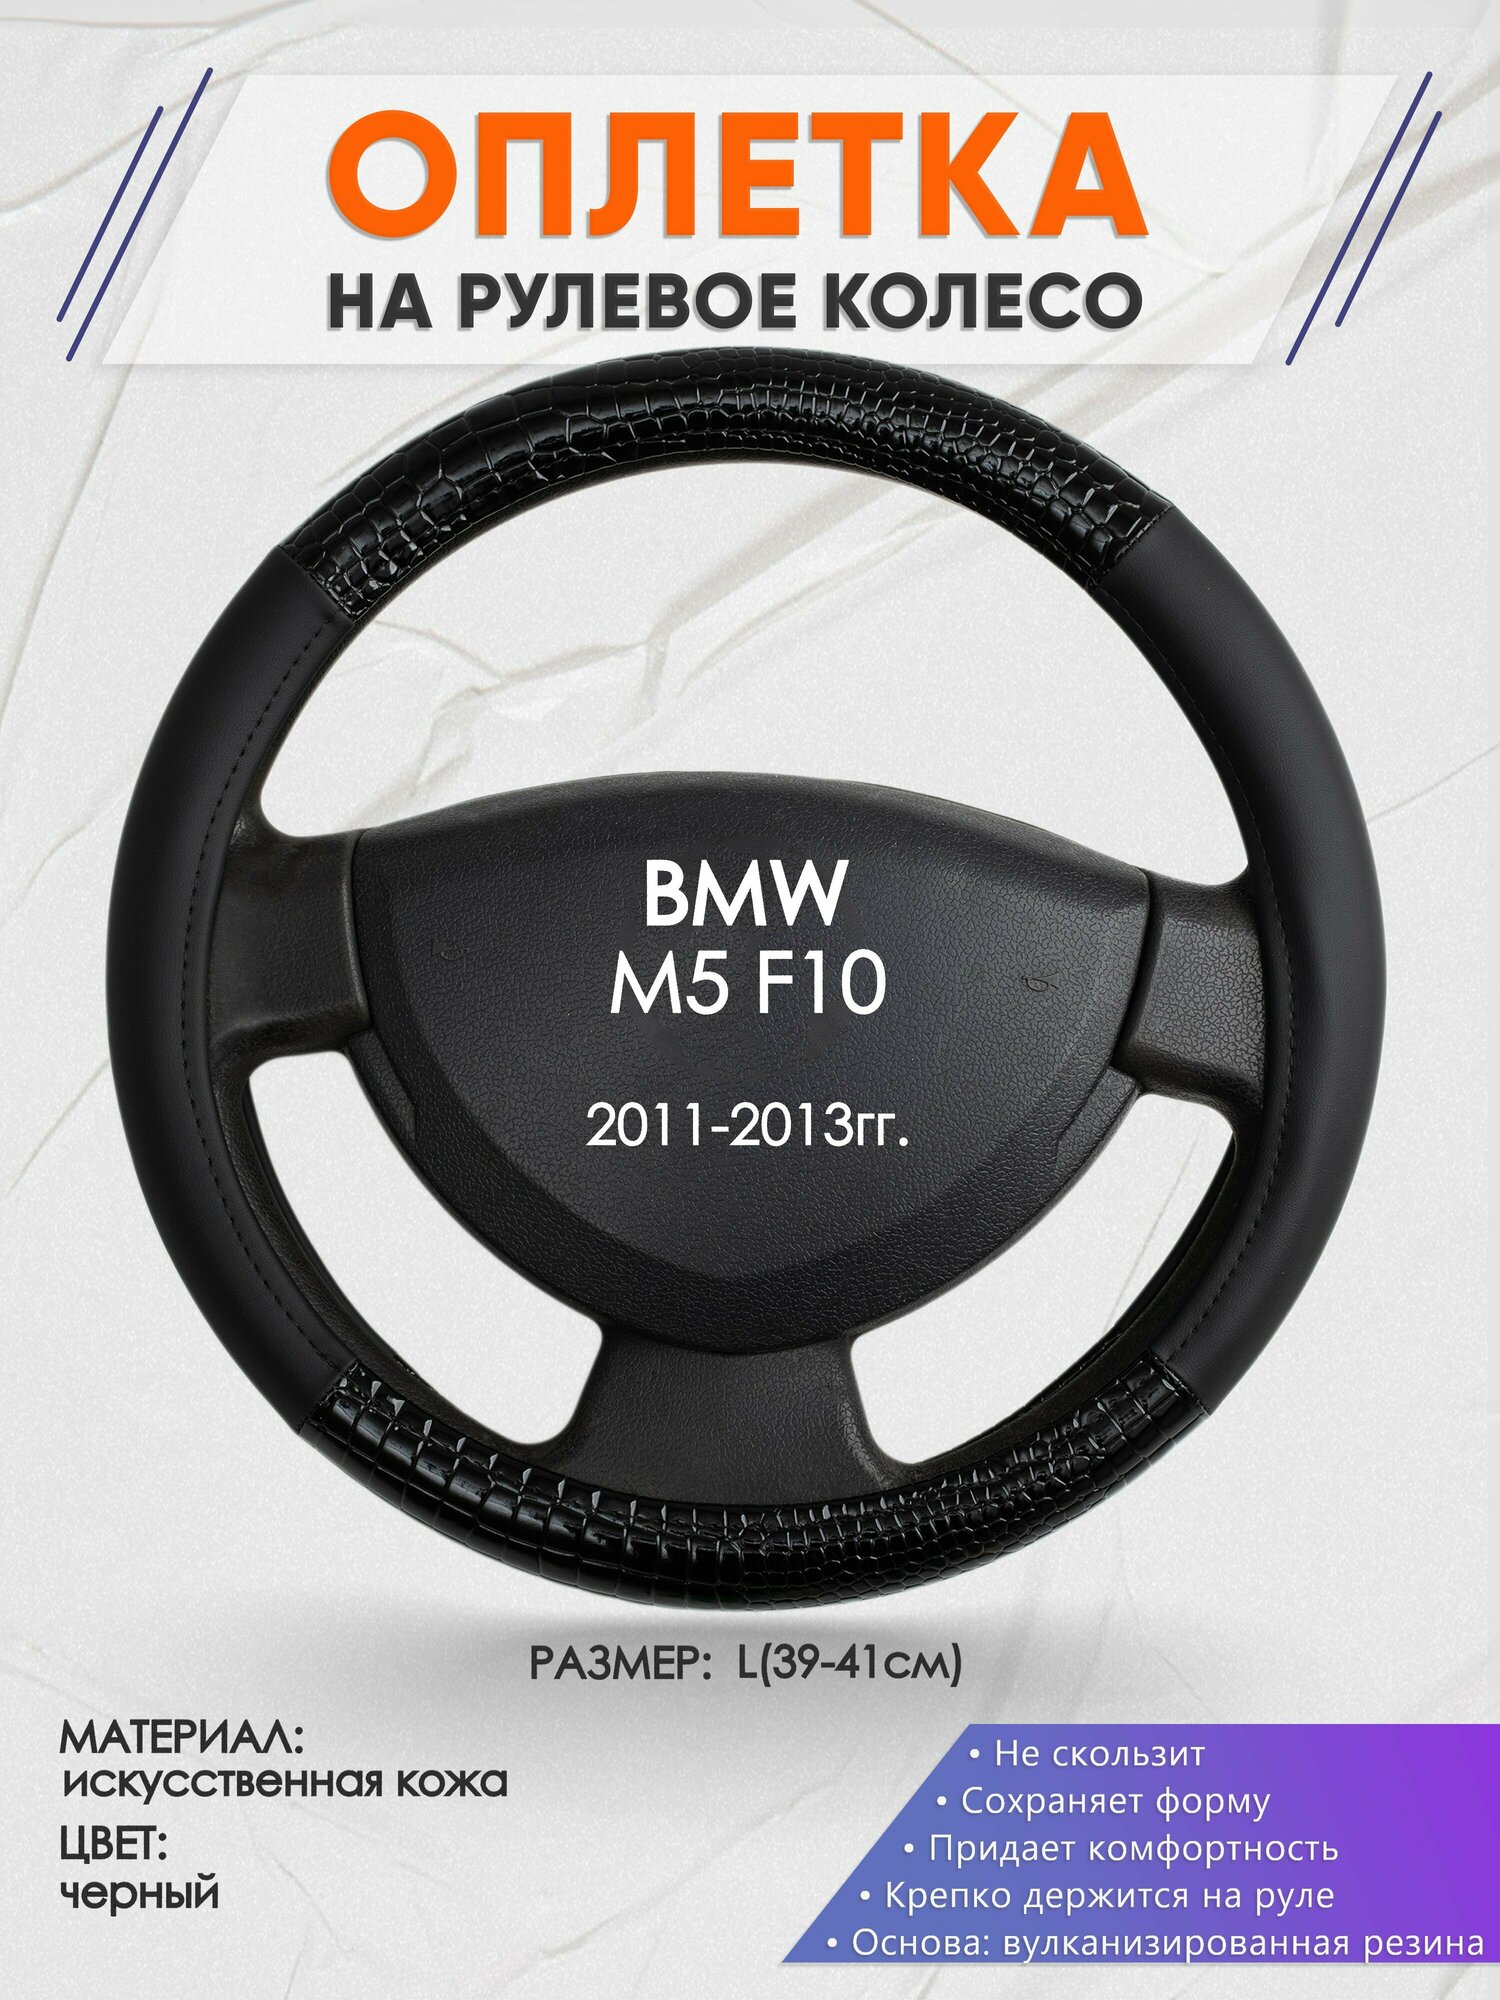 Оплетка на руль для BMW M5 F10(БМВ м5) 2011-2013, L(39-41см), Искусственная кожа 83